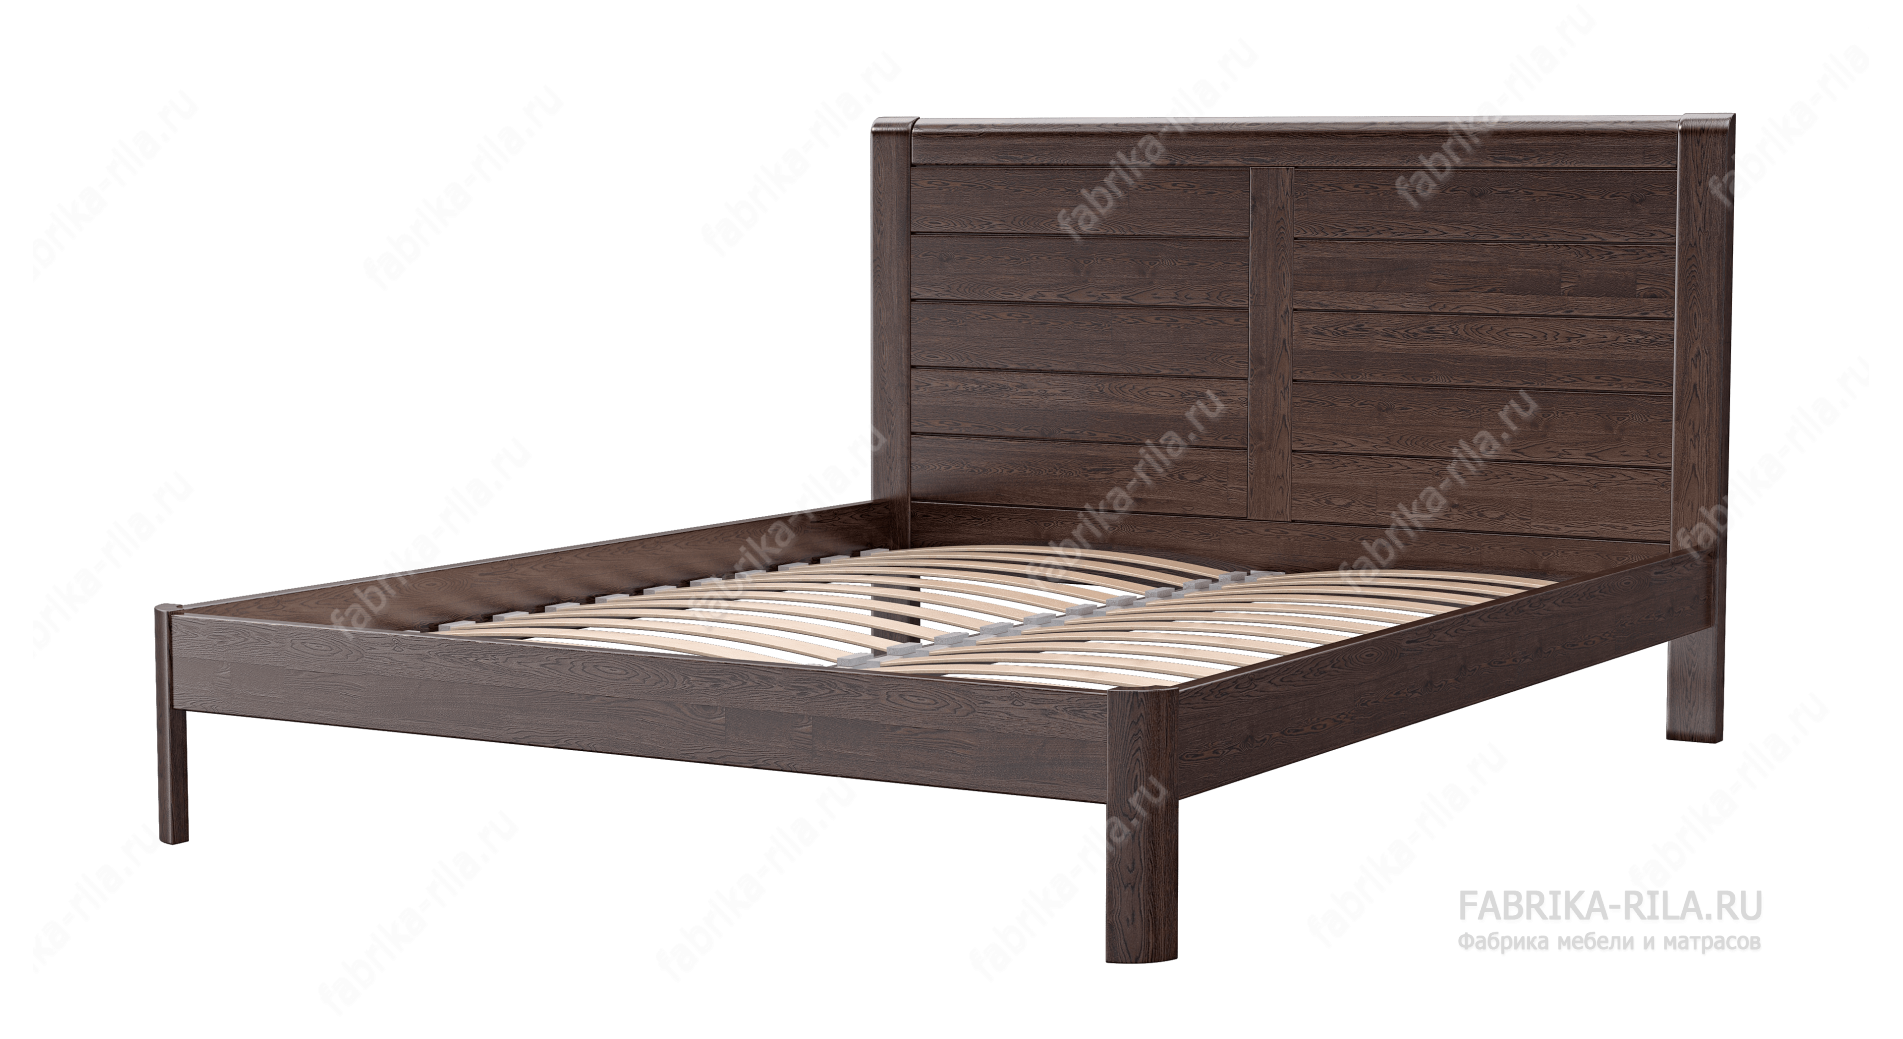 Кровать Riviera — 90x190 см. из дуба